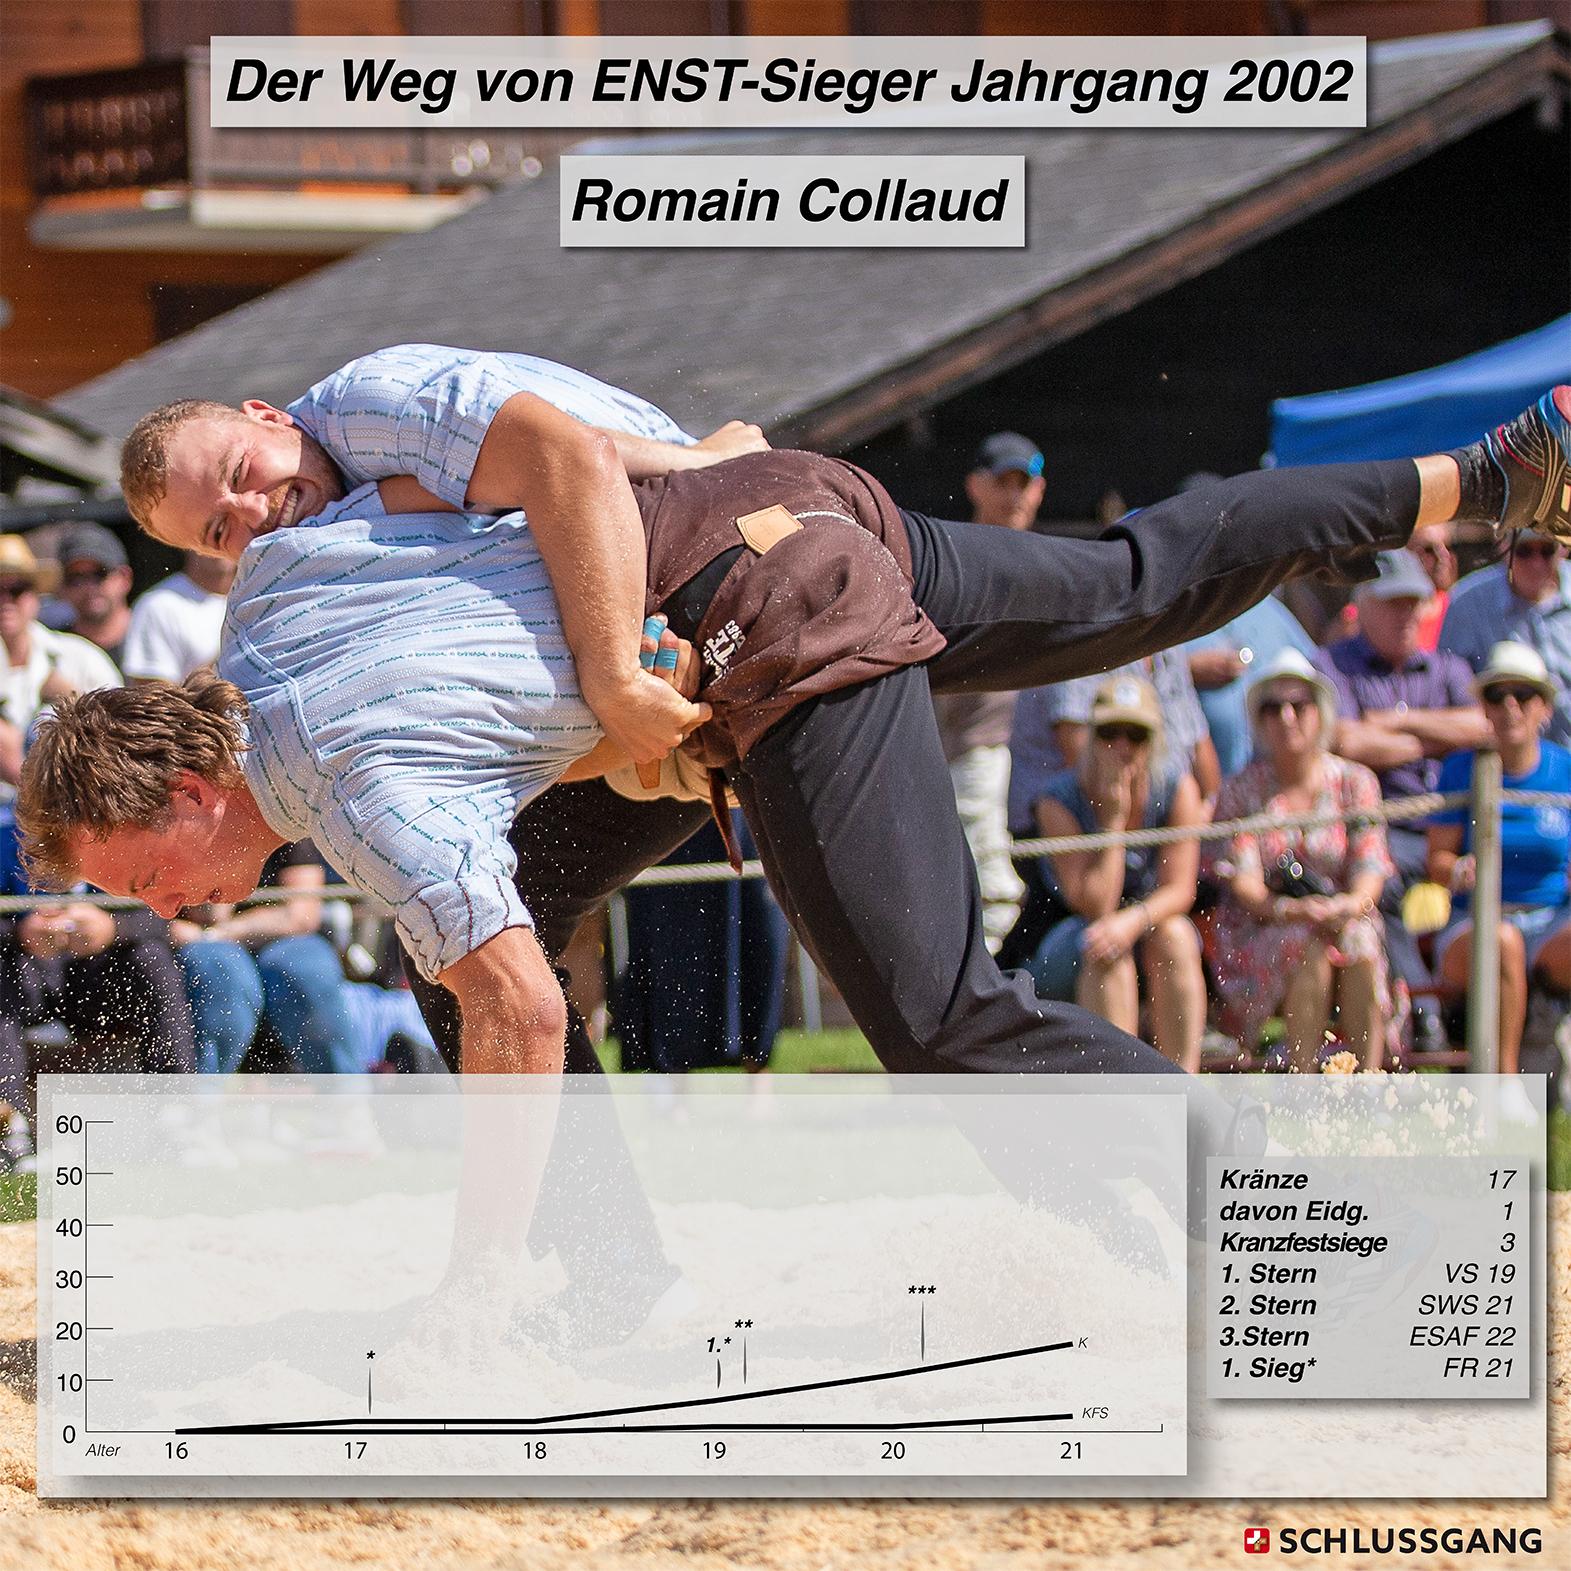 Auf einen Blick: Die schwingerische Laufbahn vom ENST-Kategoriensieger im Jahrgang 1998, Samuel Giger